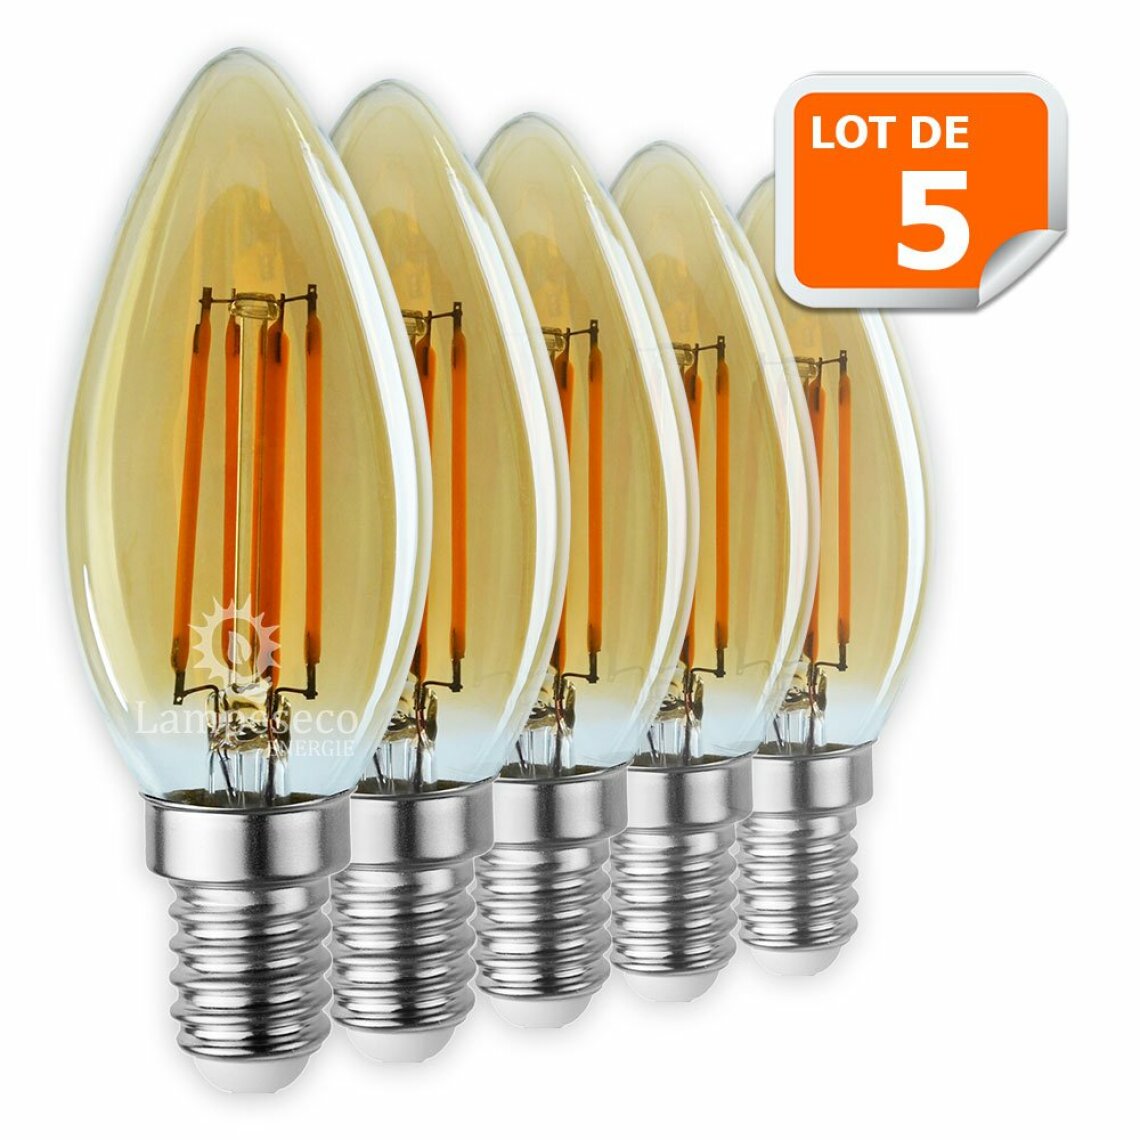 Lampesecoenergie - Lot de 5 Ampoules Led Flamme Filament Doré 4 watt (éq. 42 Watt) Culot E14 - Ampoules LED